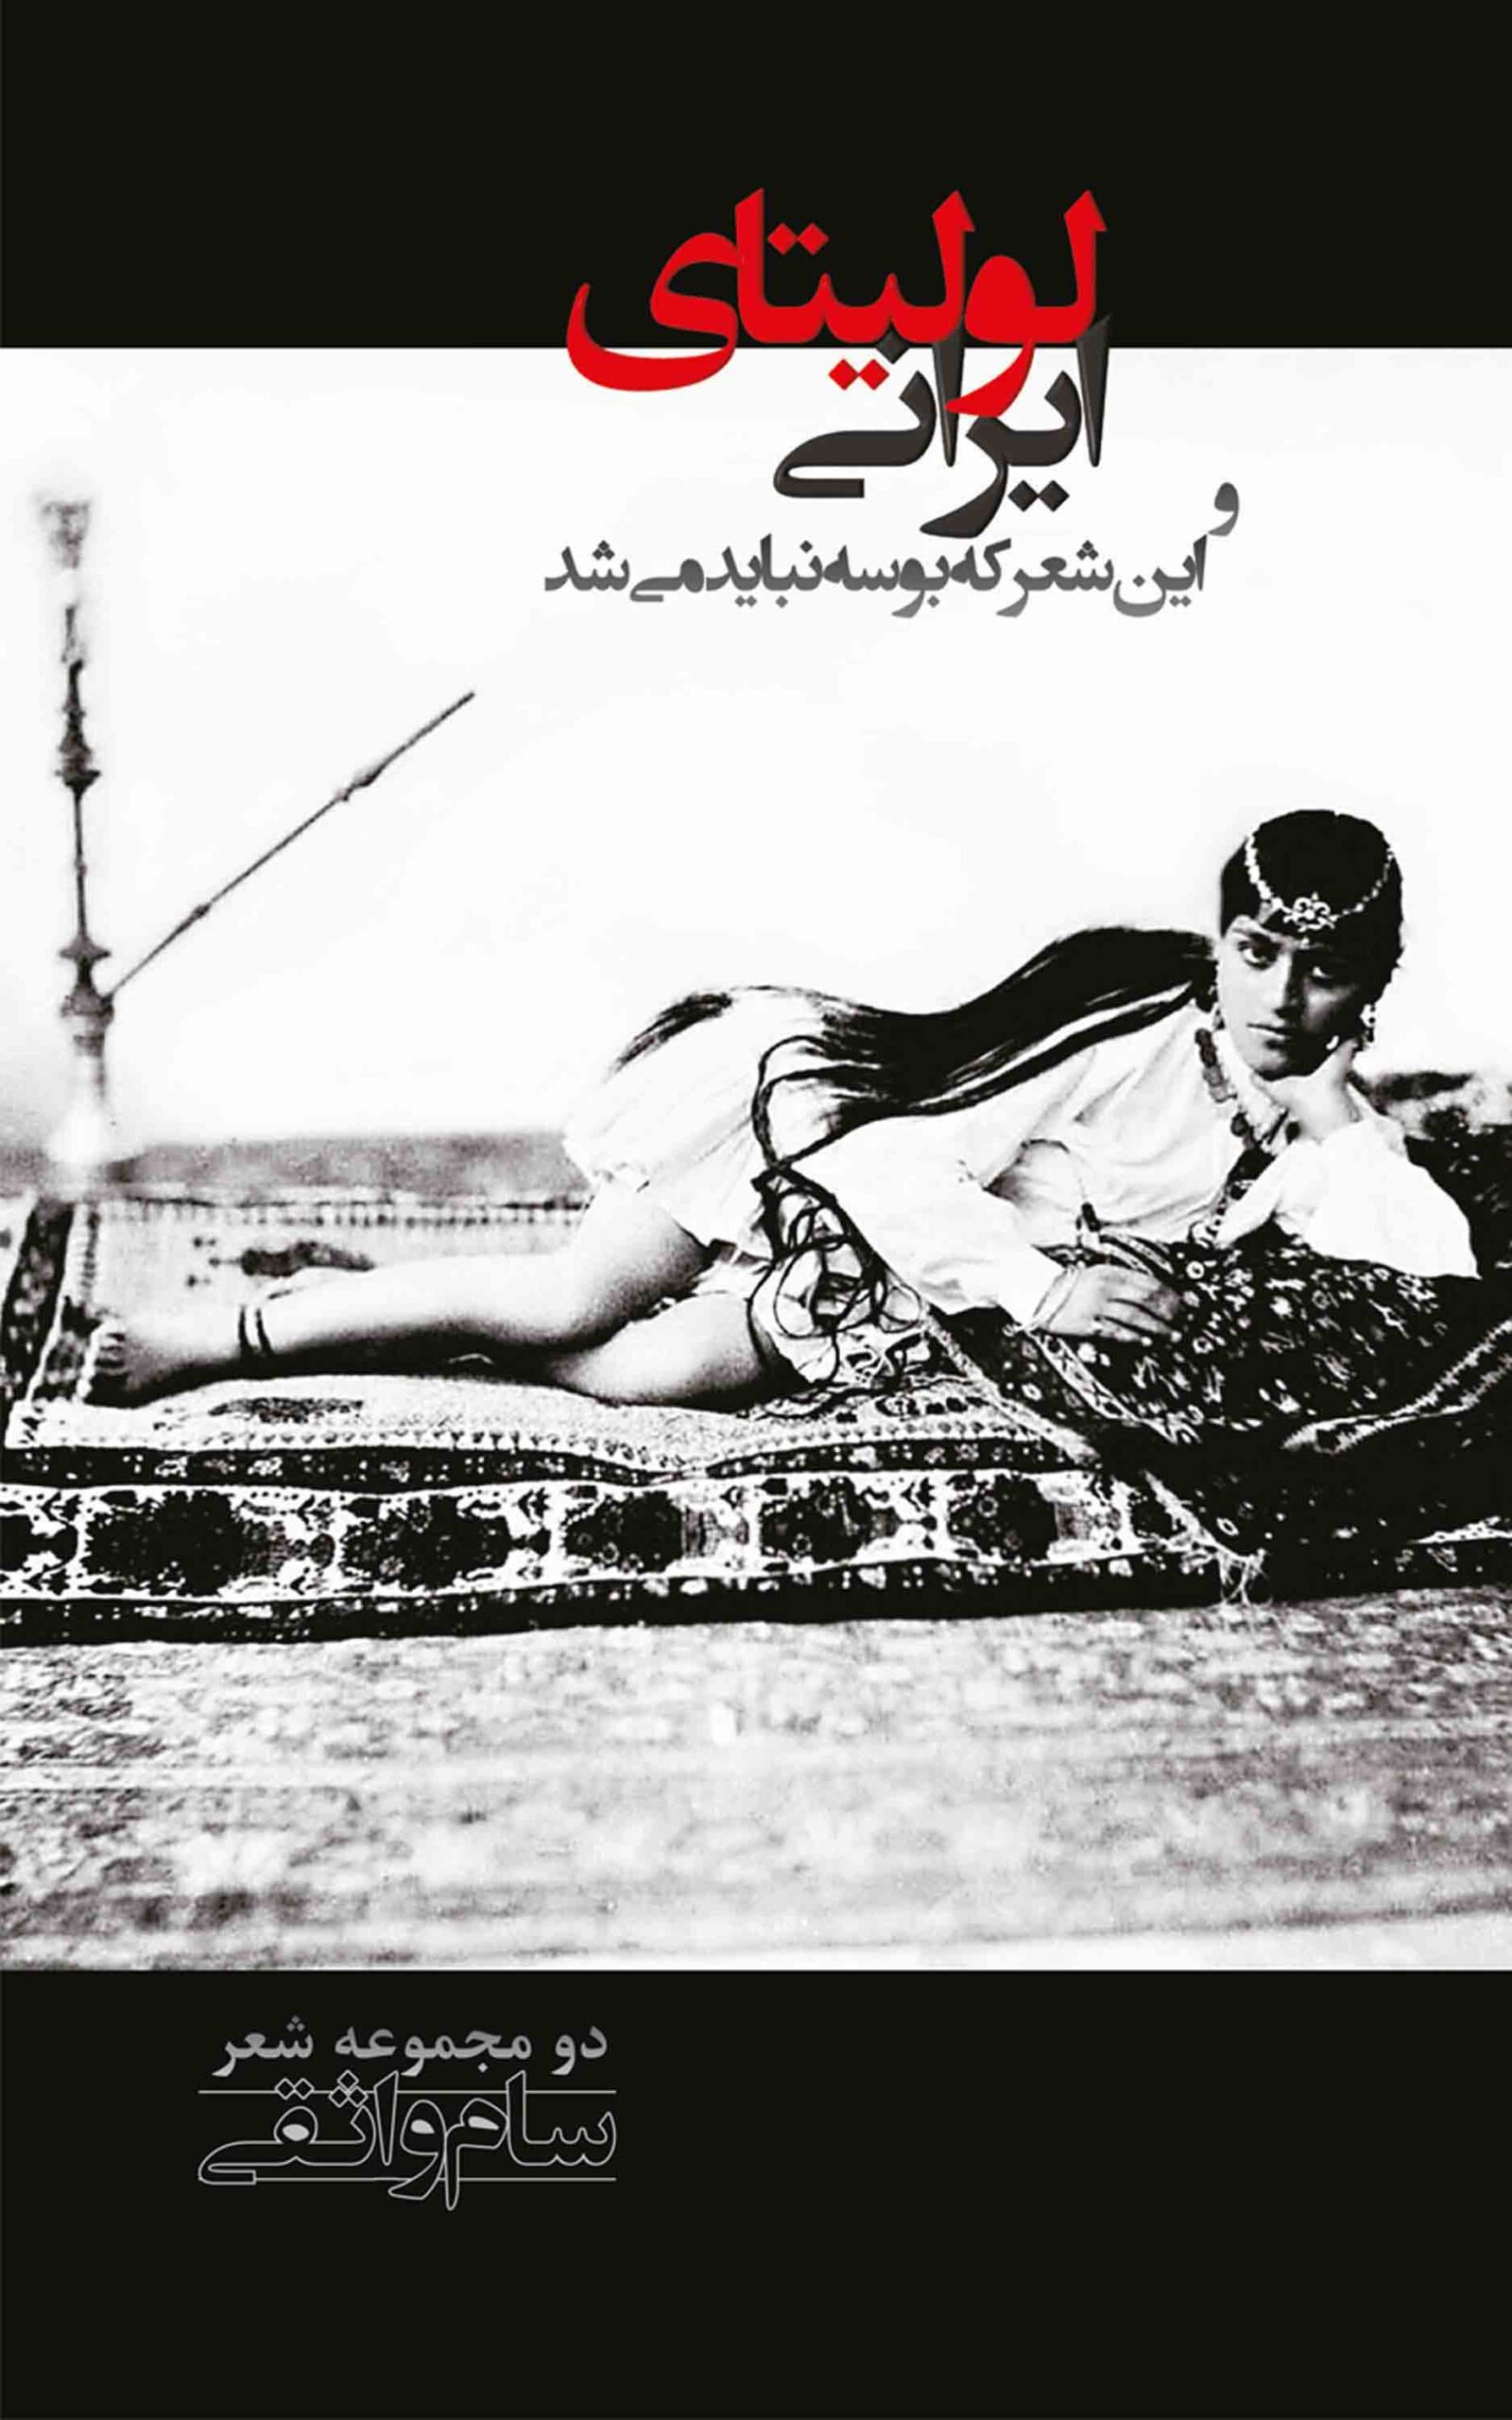 lolitaye irani